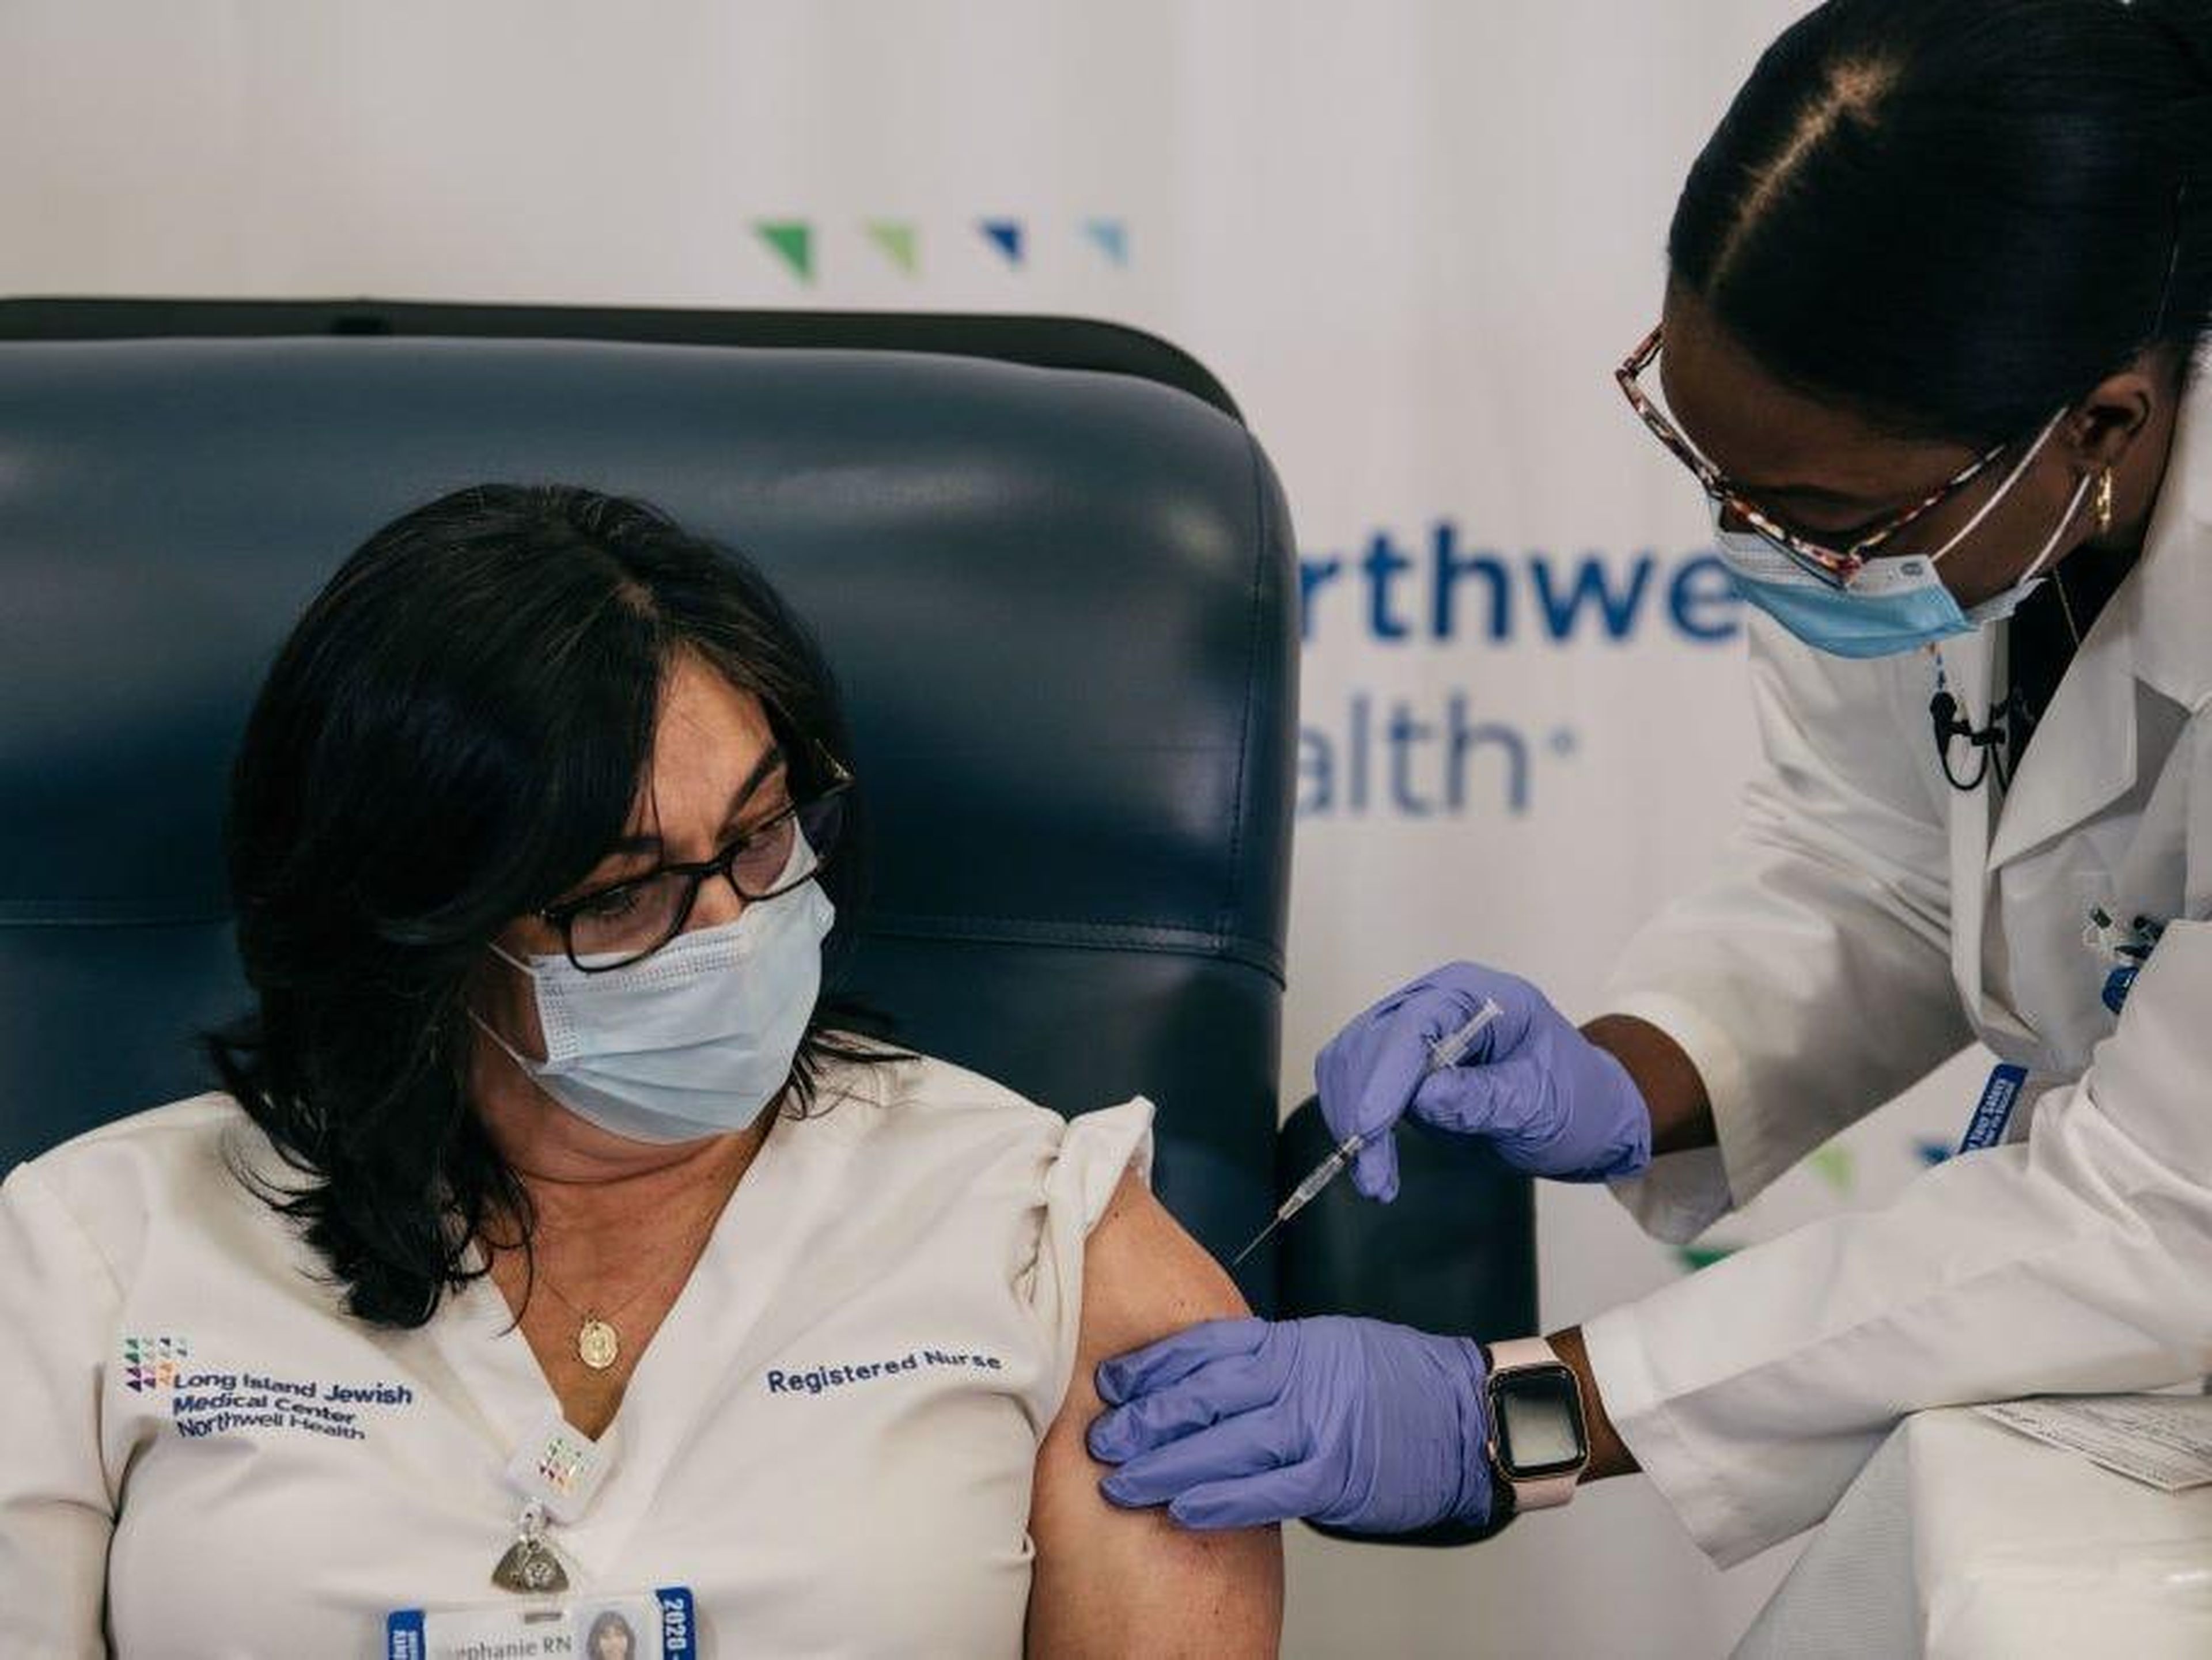 La enfermera Stephanie Cal recibe la vacuna COVID-19 en el Long Island Jewish Medical Center, Nueva York, Estados Unidos.